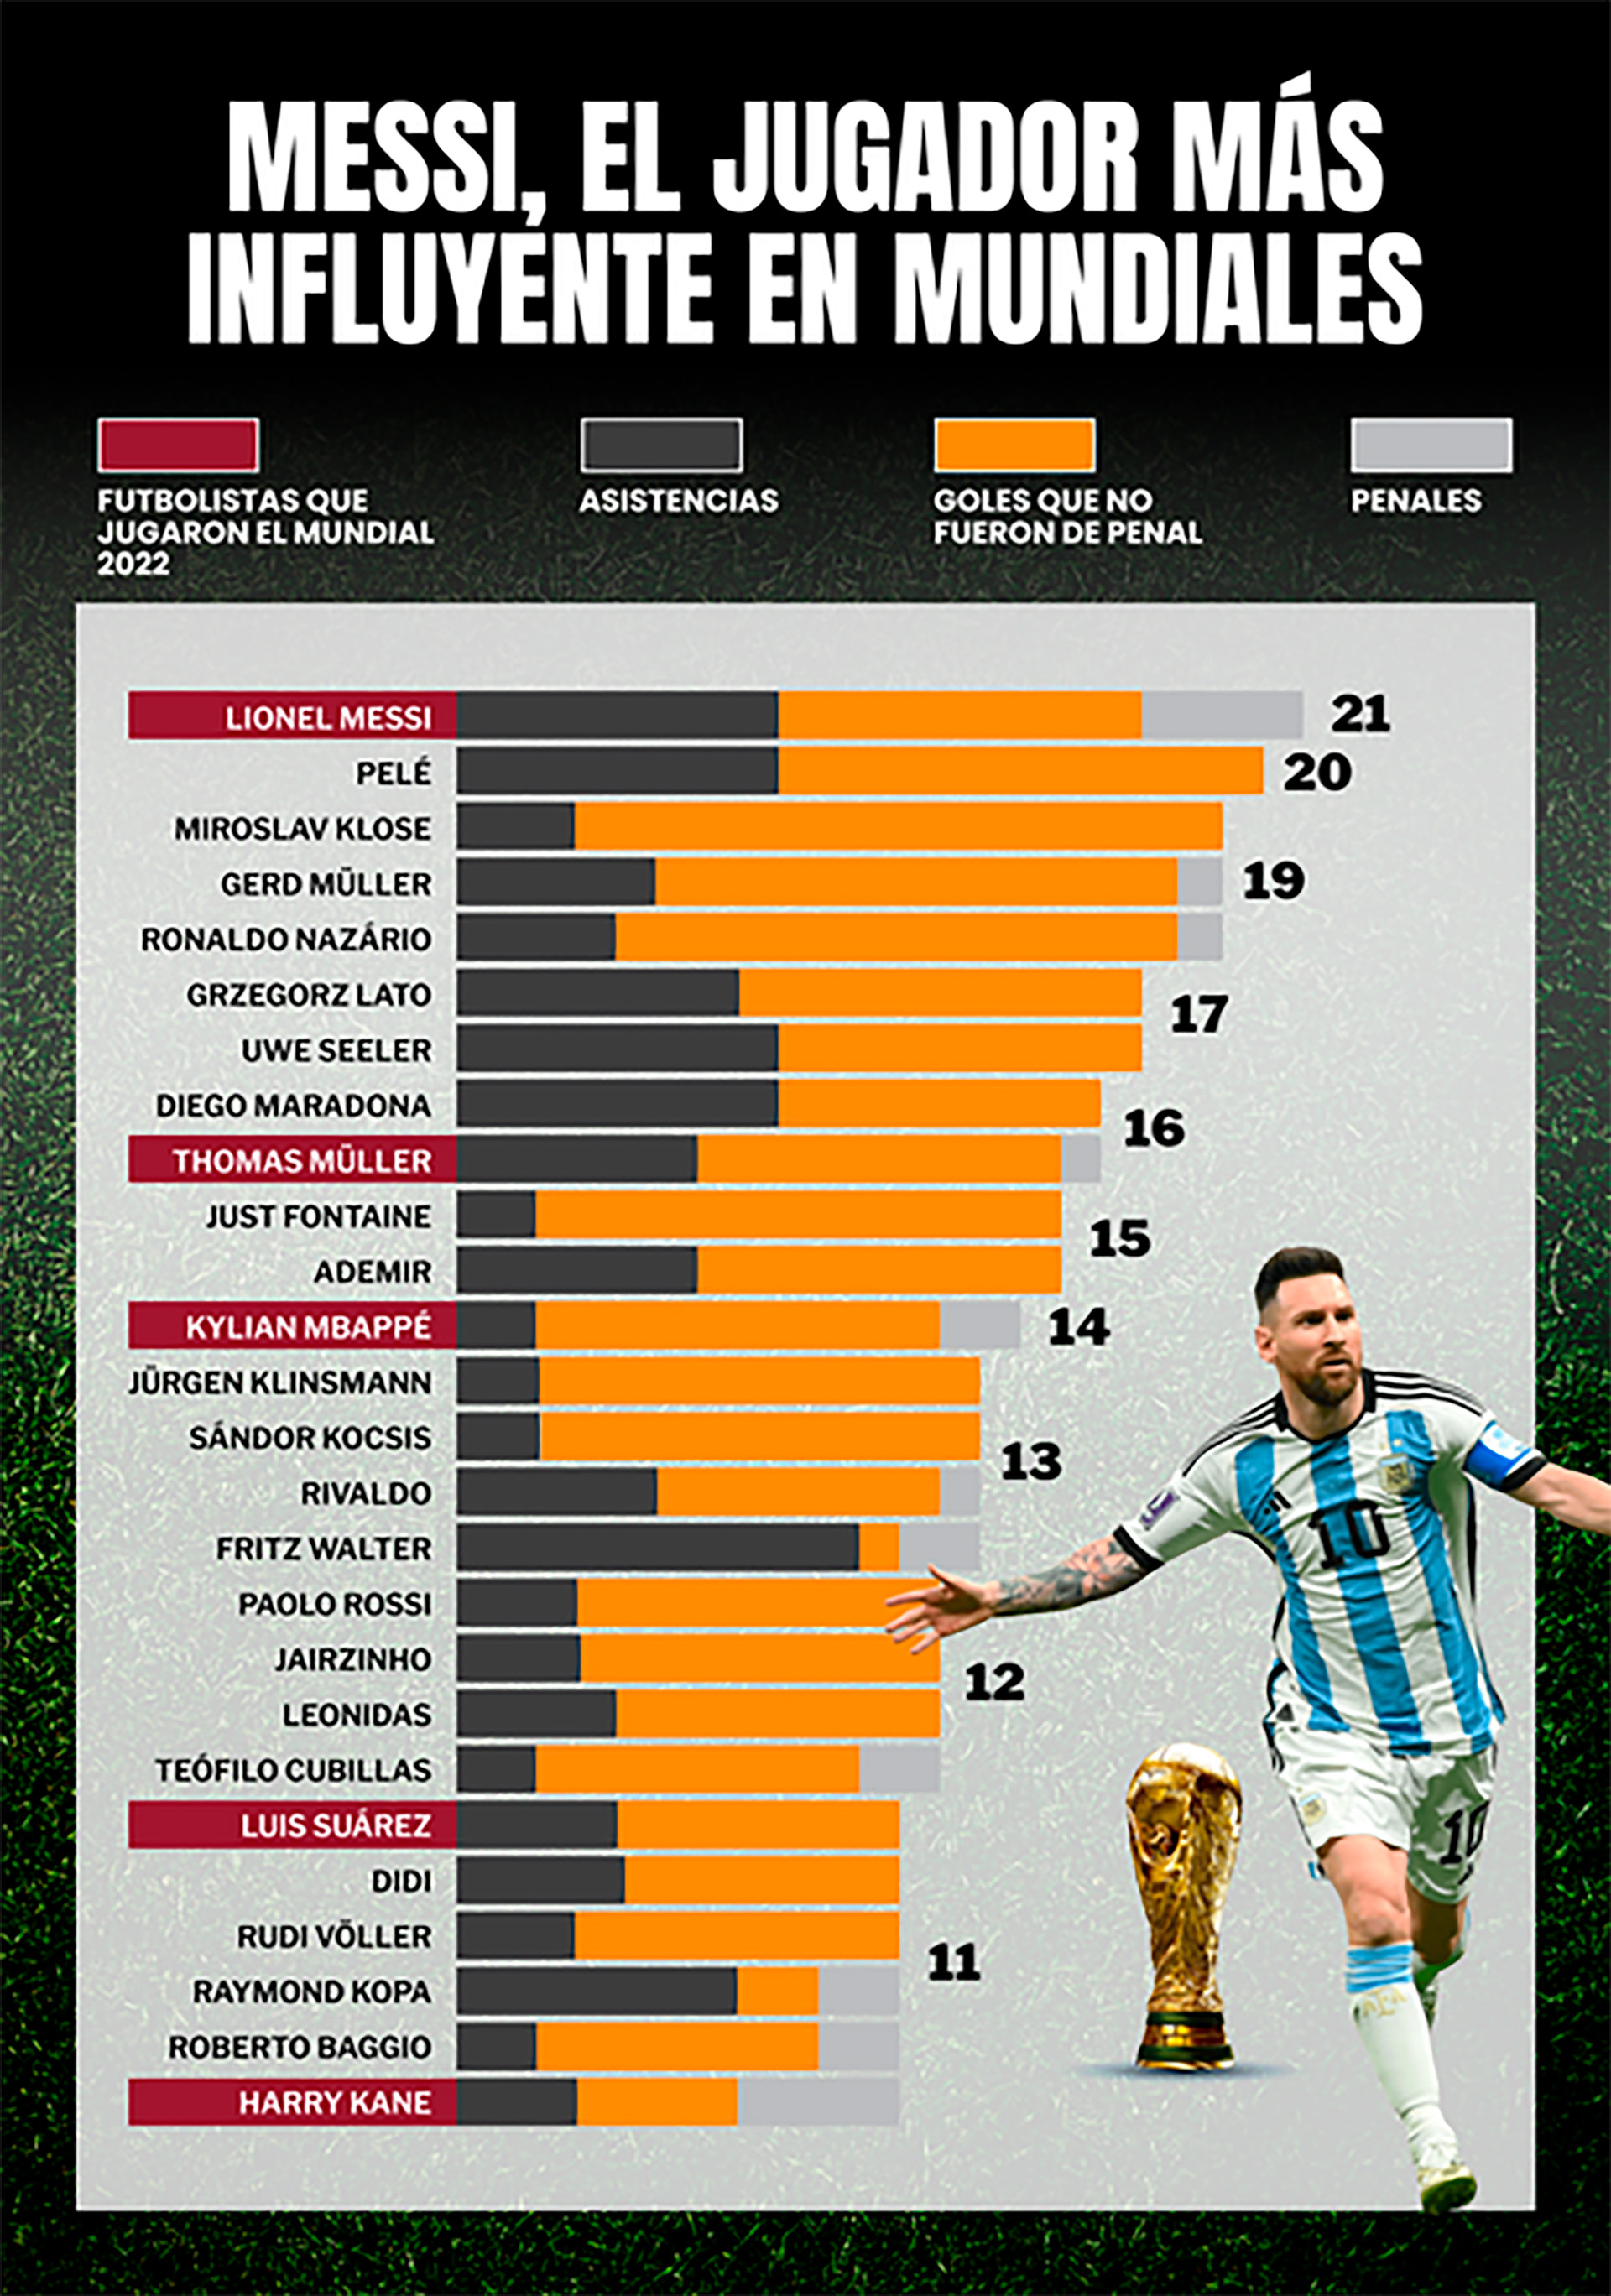 Los impresionantes números que ponen a Lionel Messi por encima de